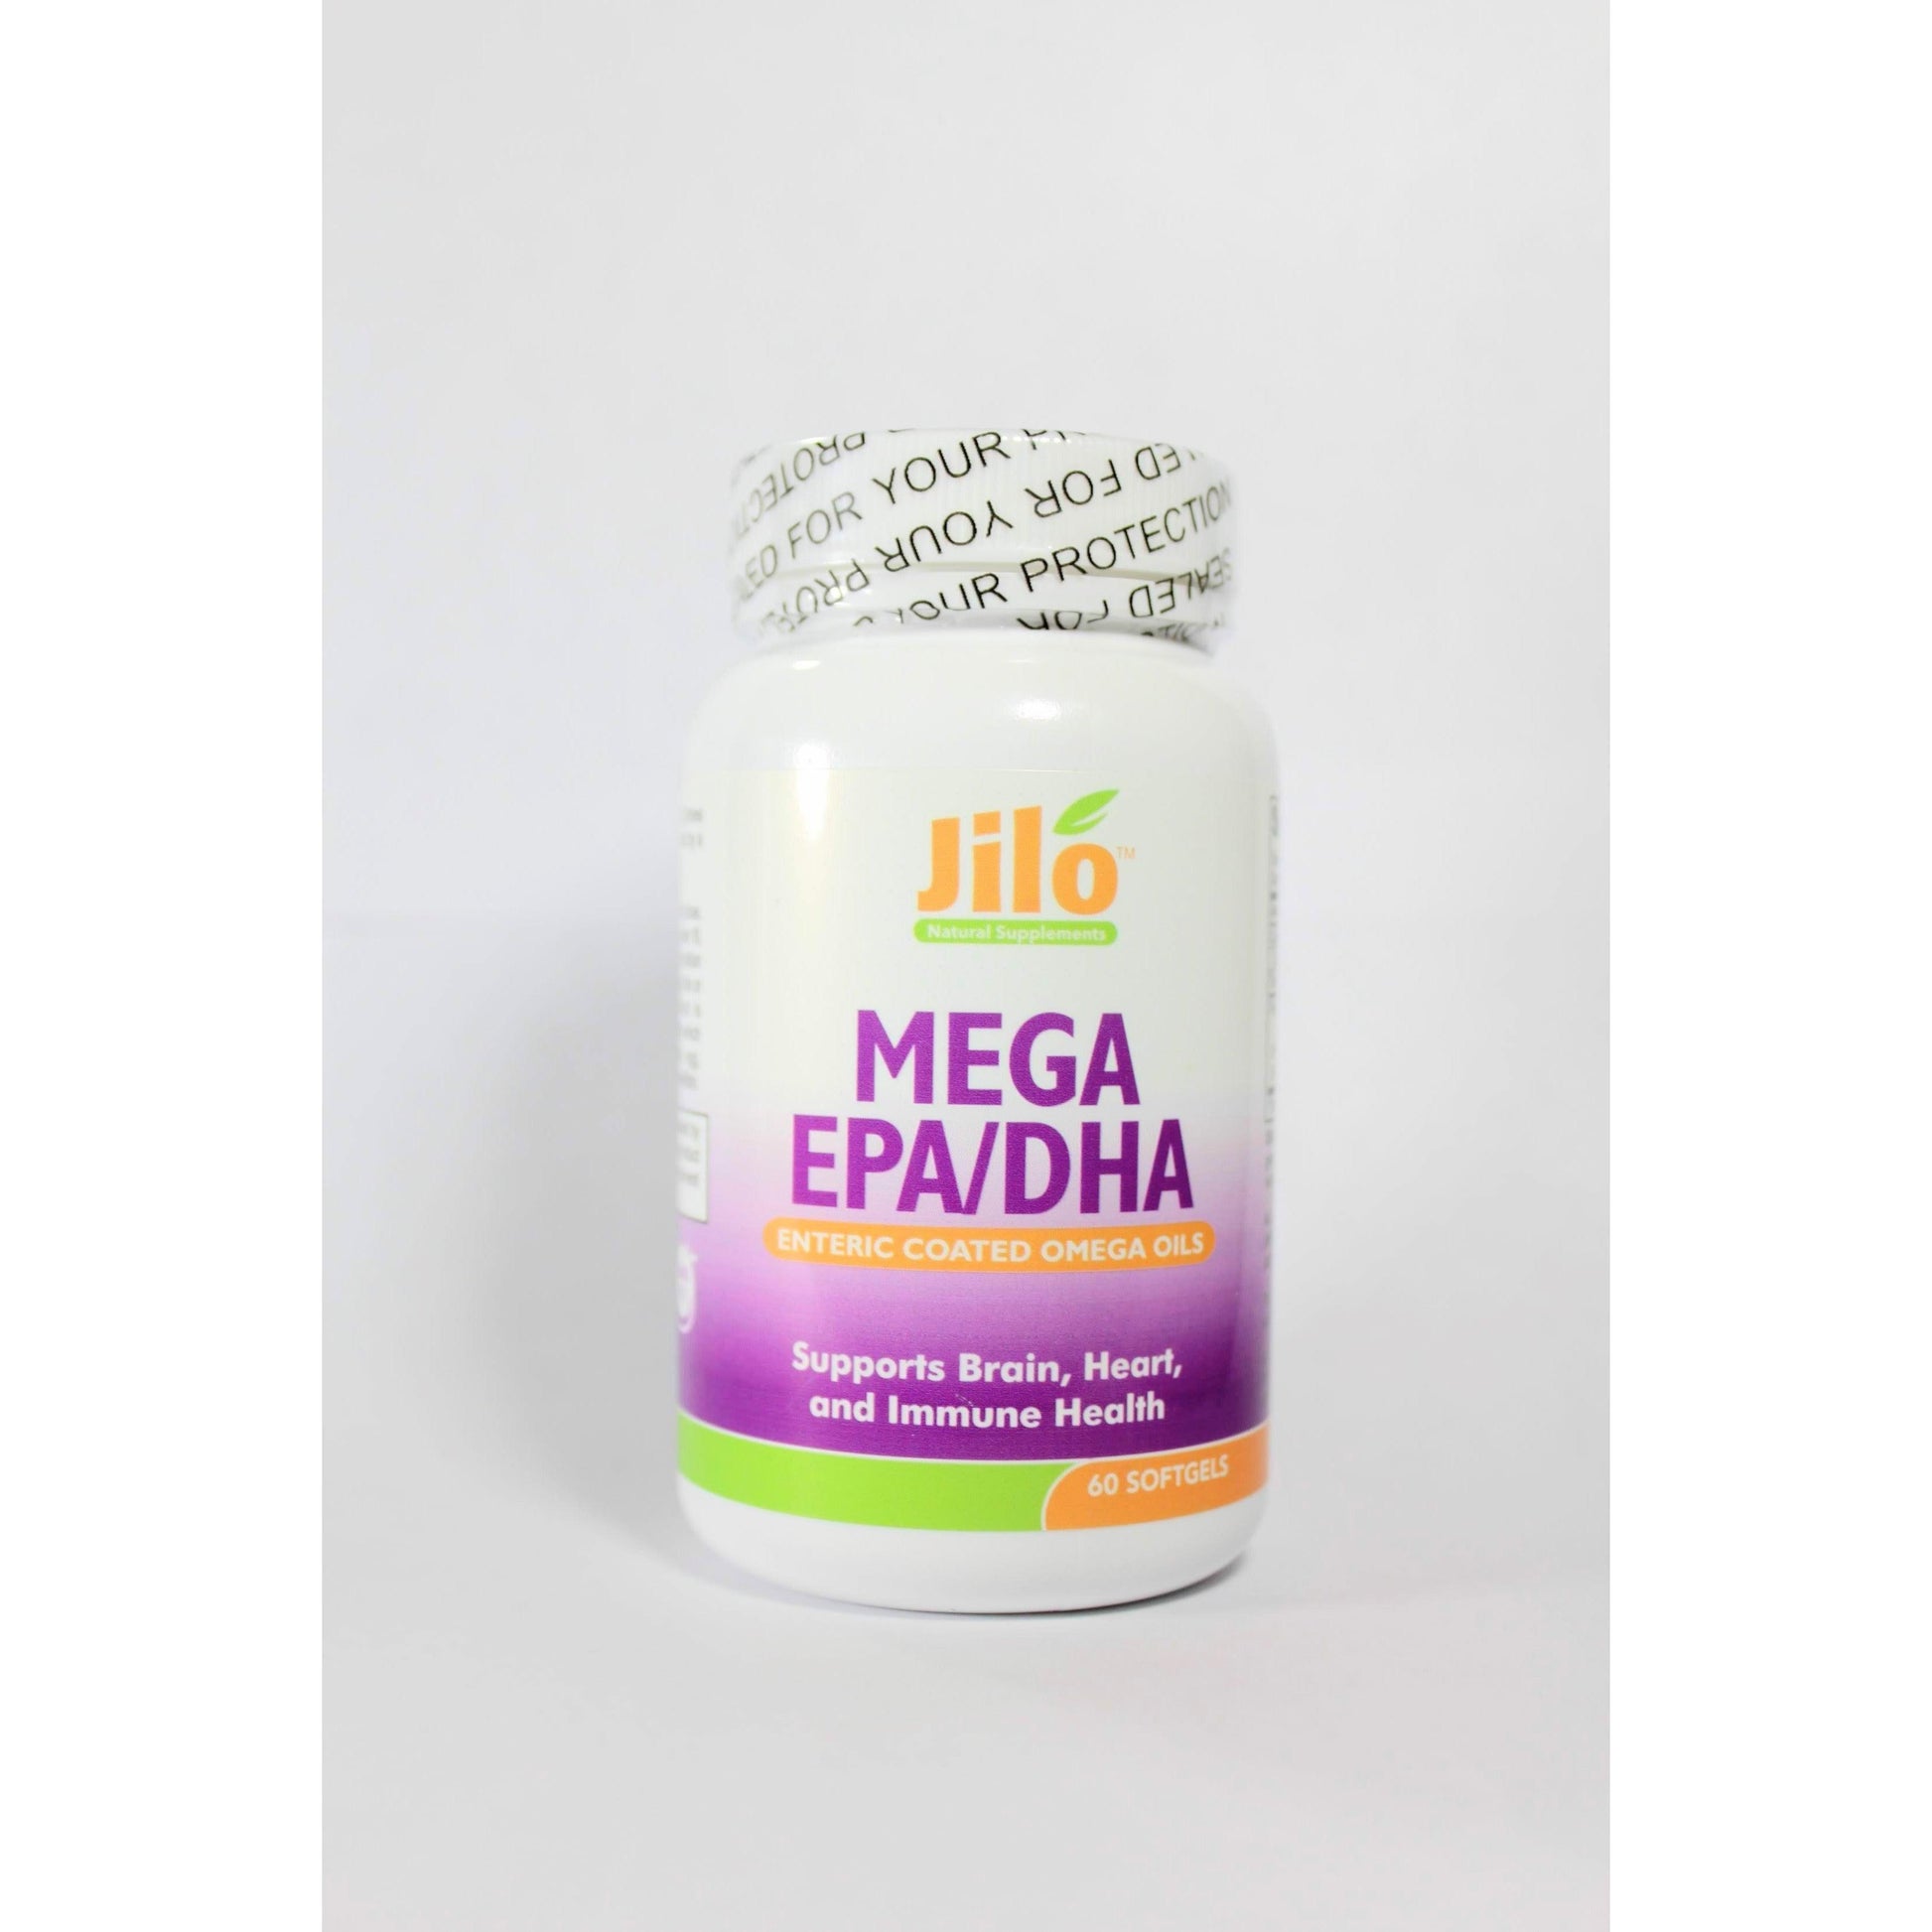 Mega EPA/DHA - Immune Health, brain and heart - The New You Recovery Kit